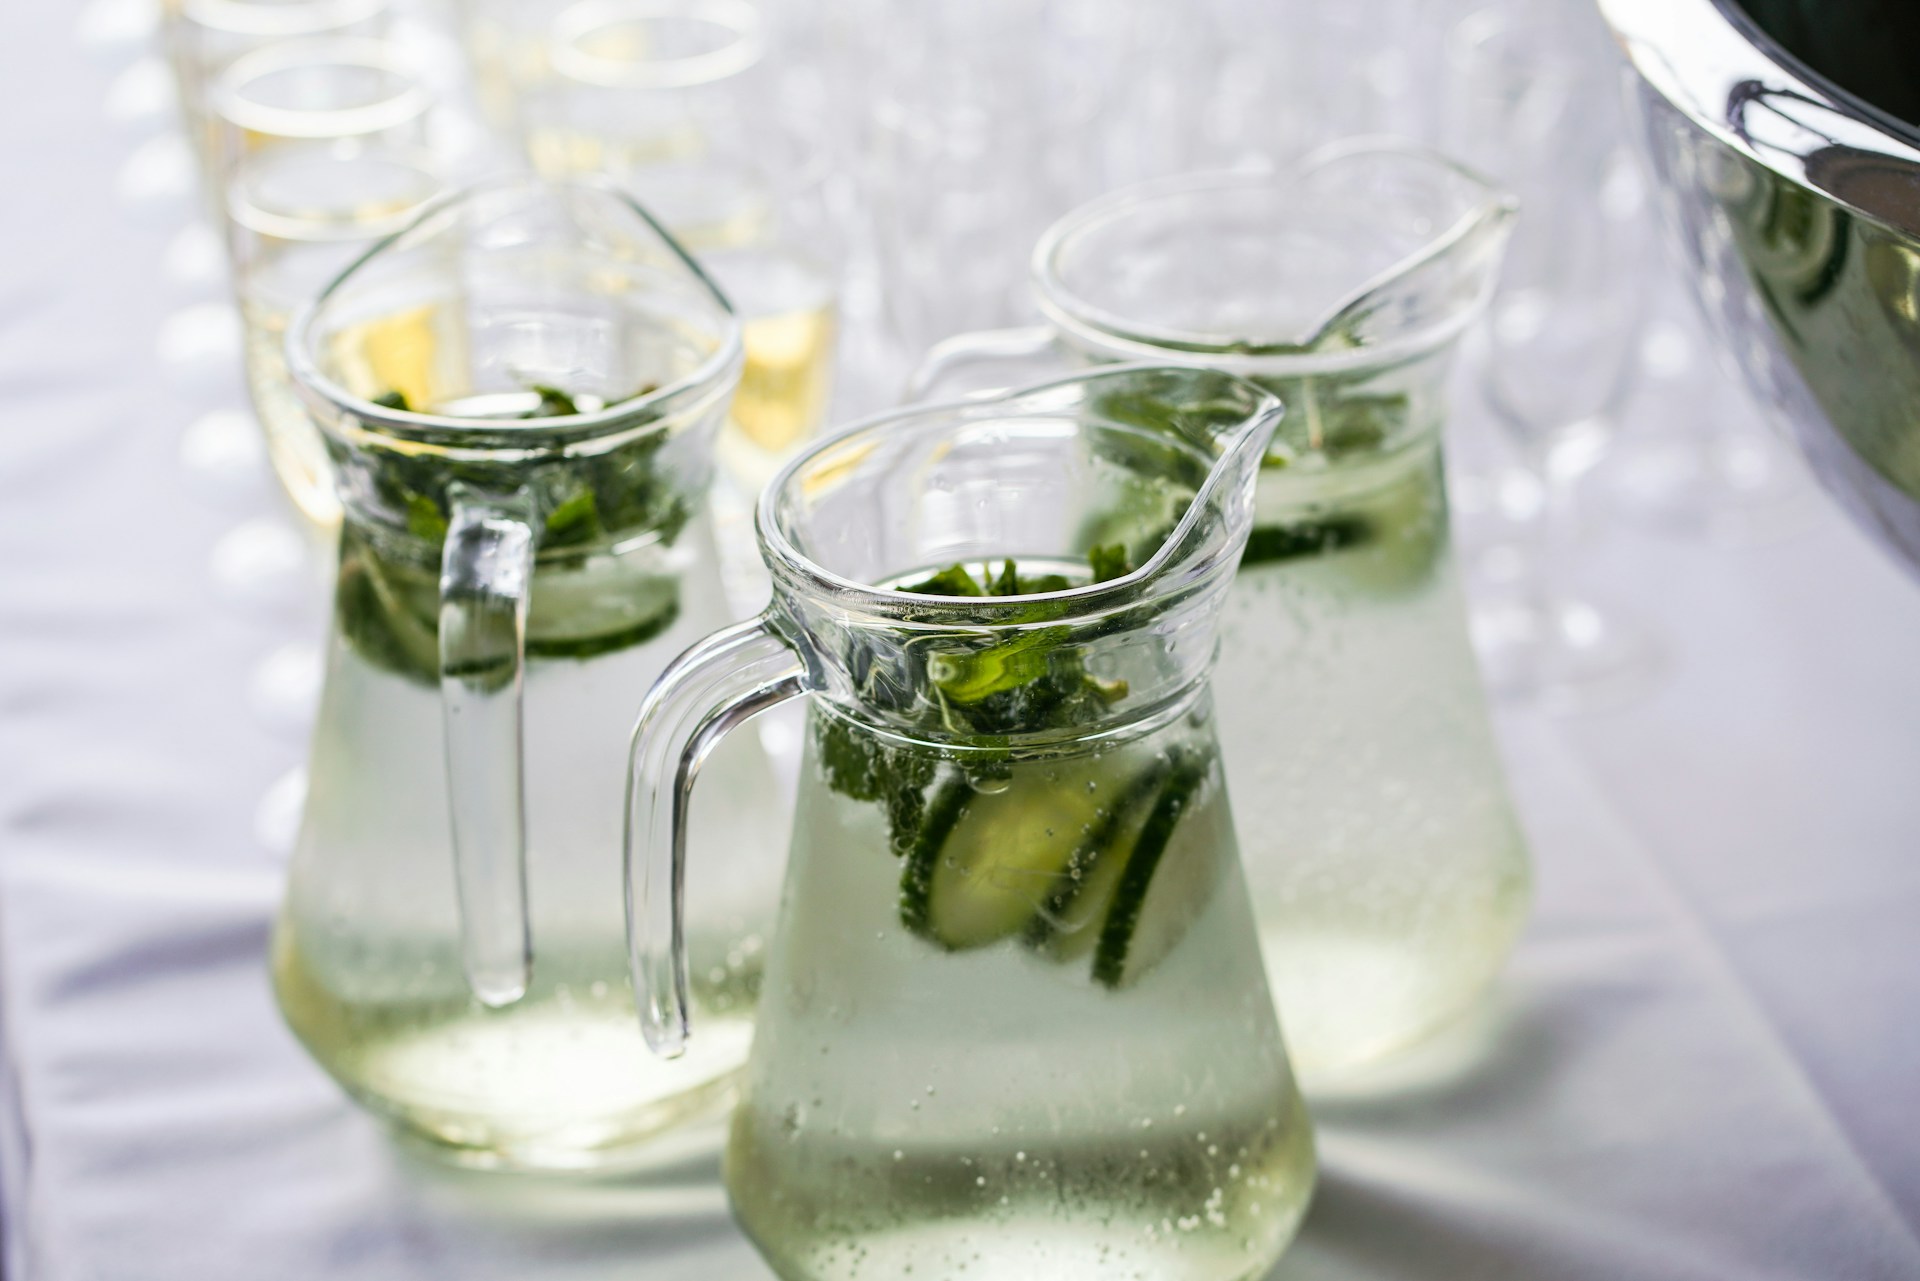 La recette d'eau detox concombre, citron vert et menthe maison